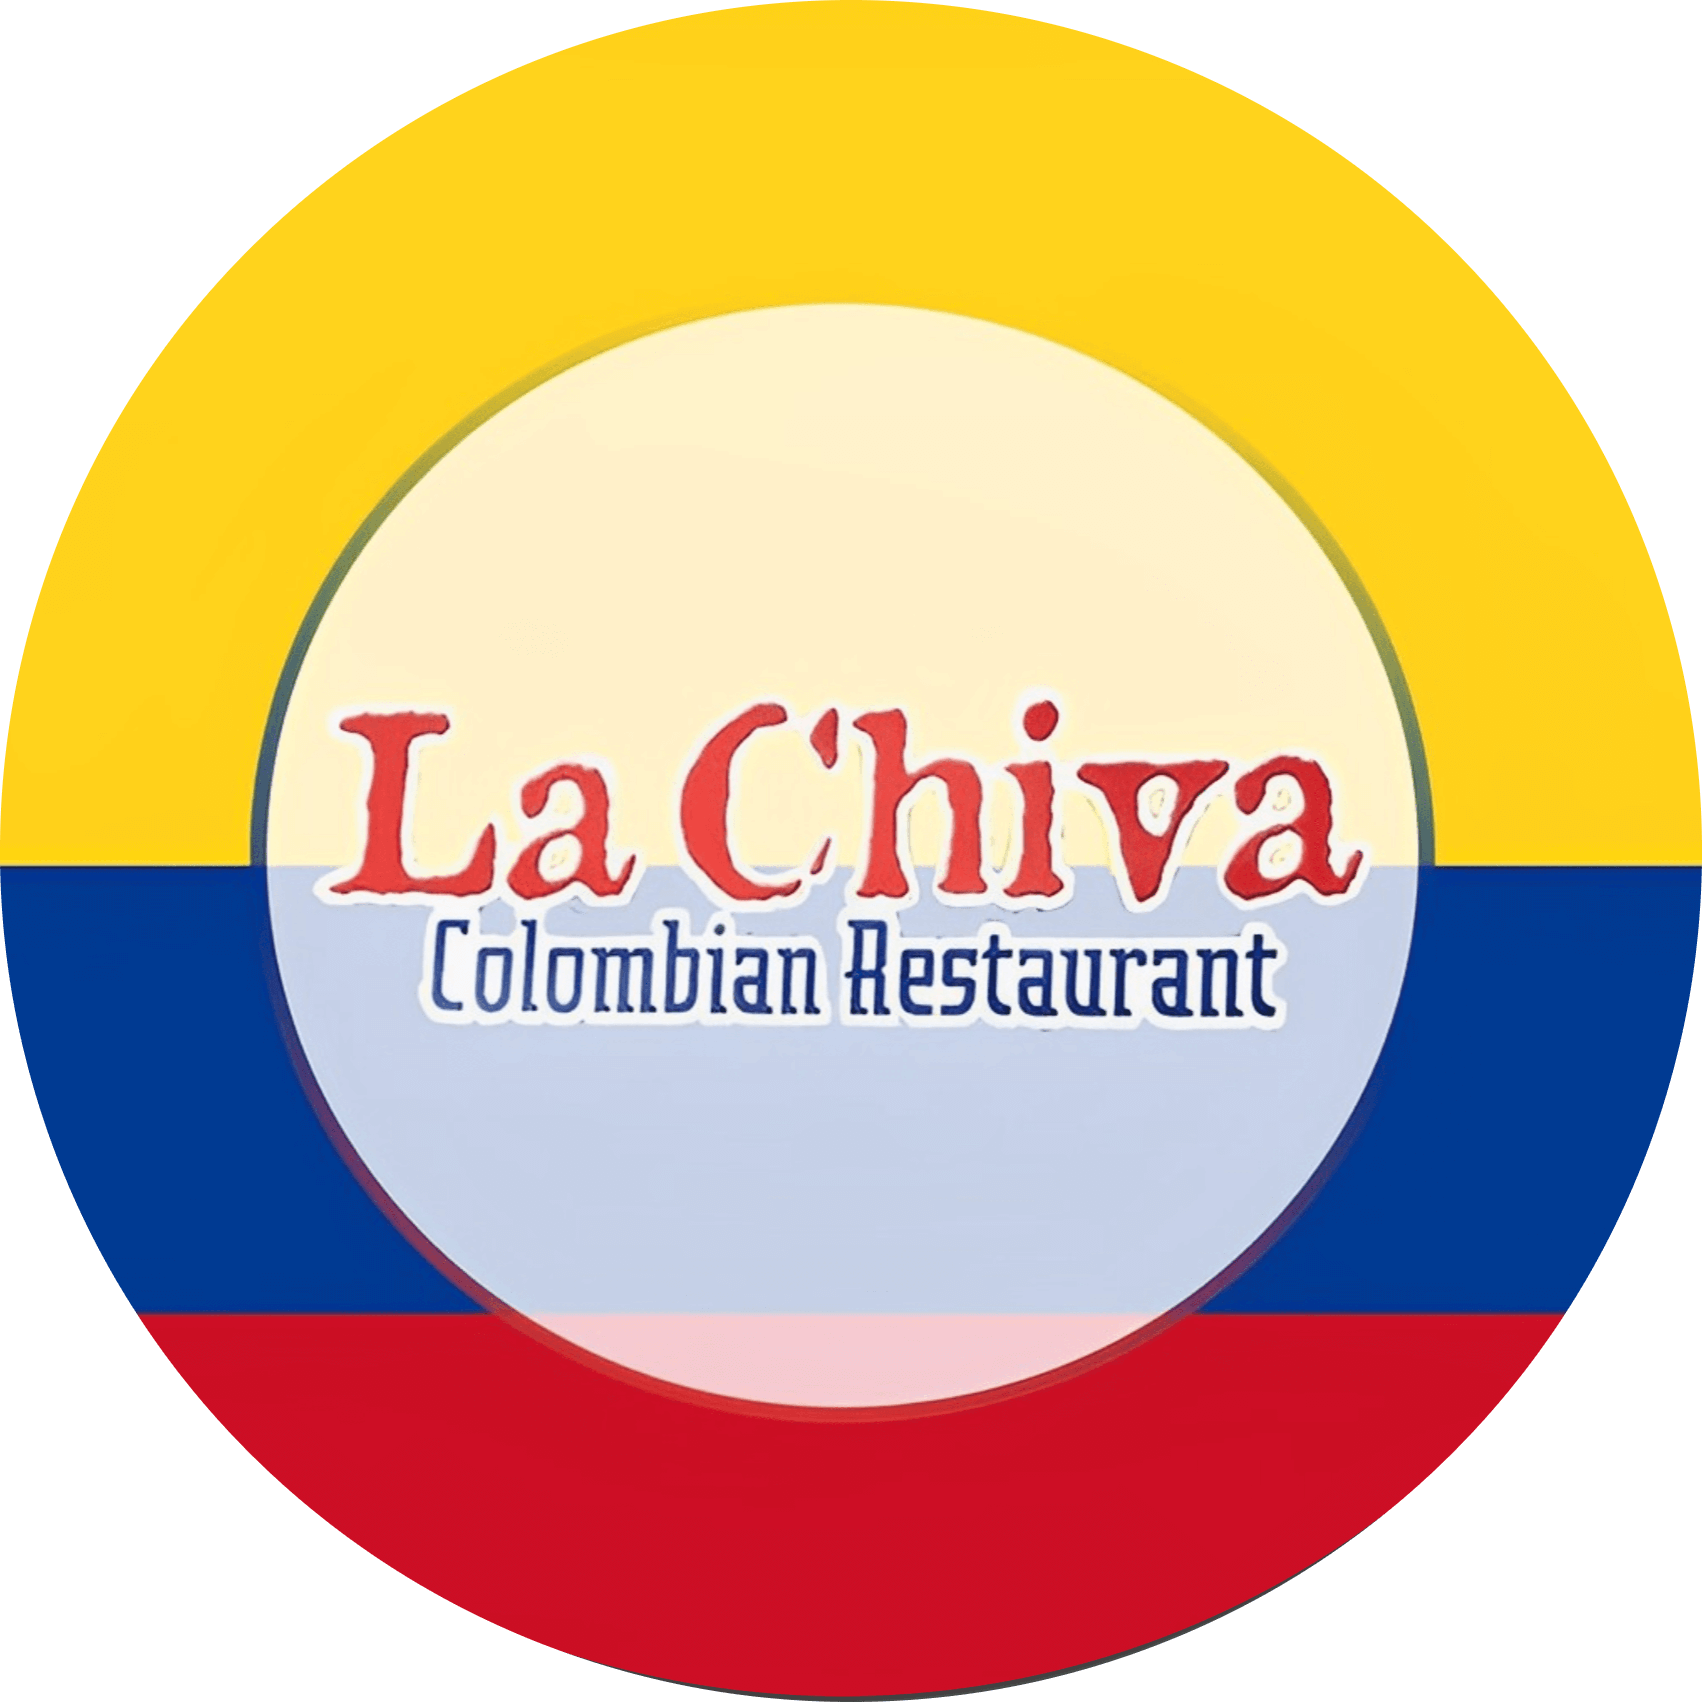 La Chiva Colombiana Restaurant #2 logo